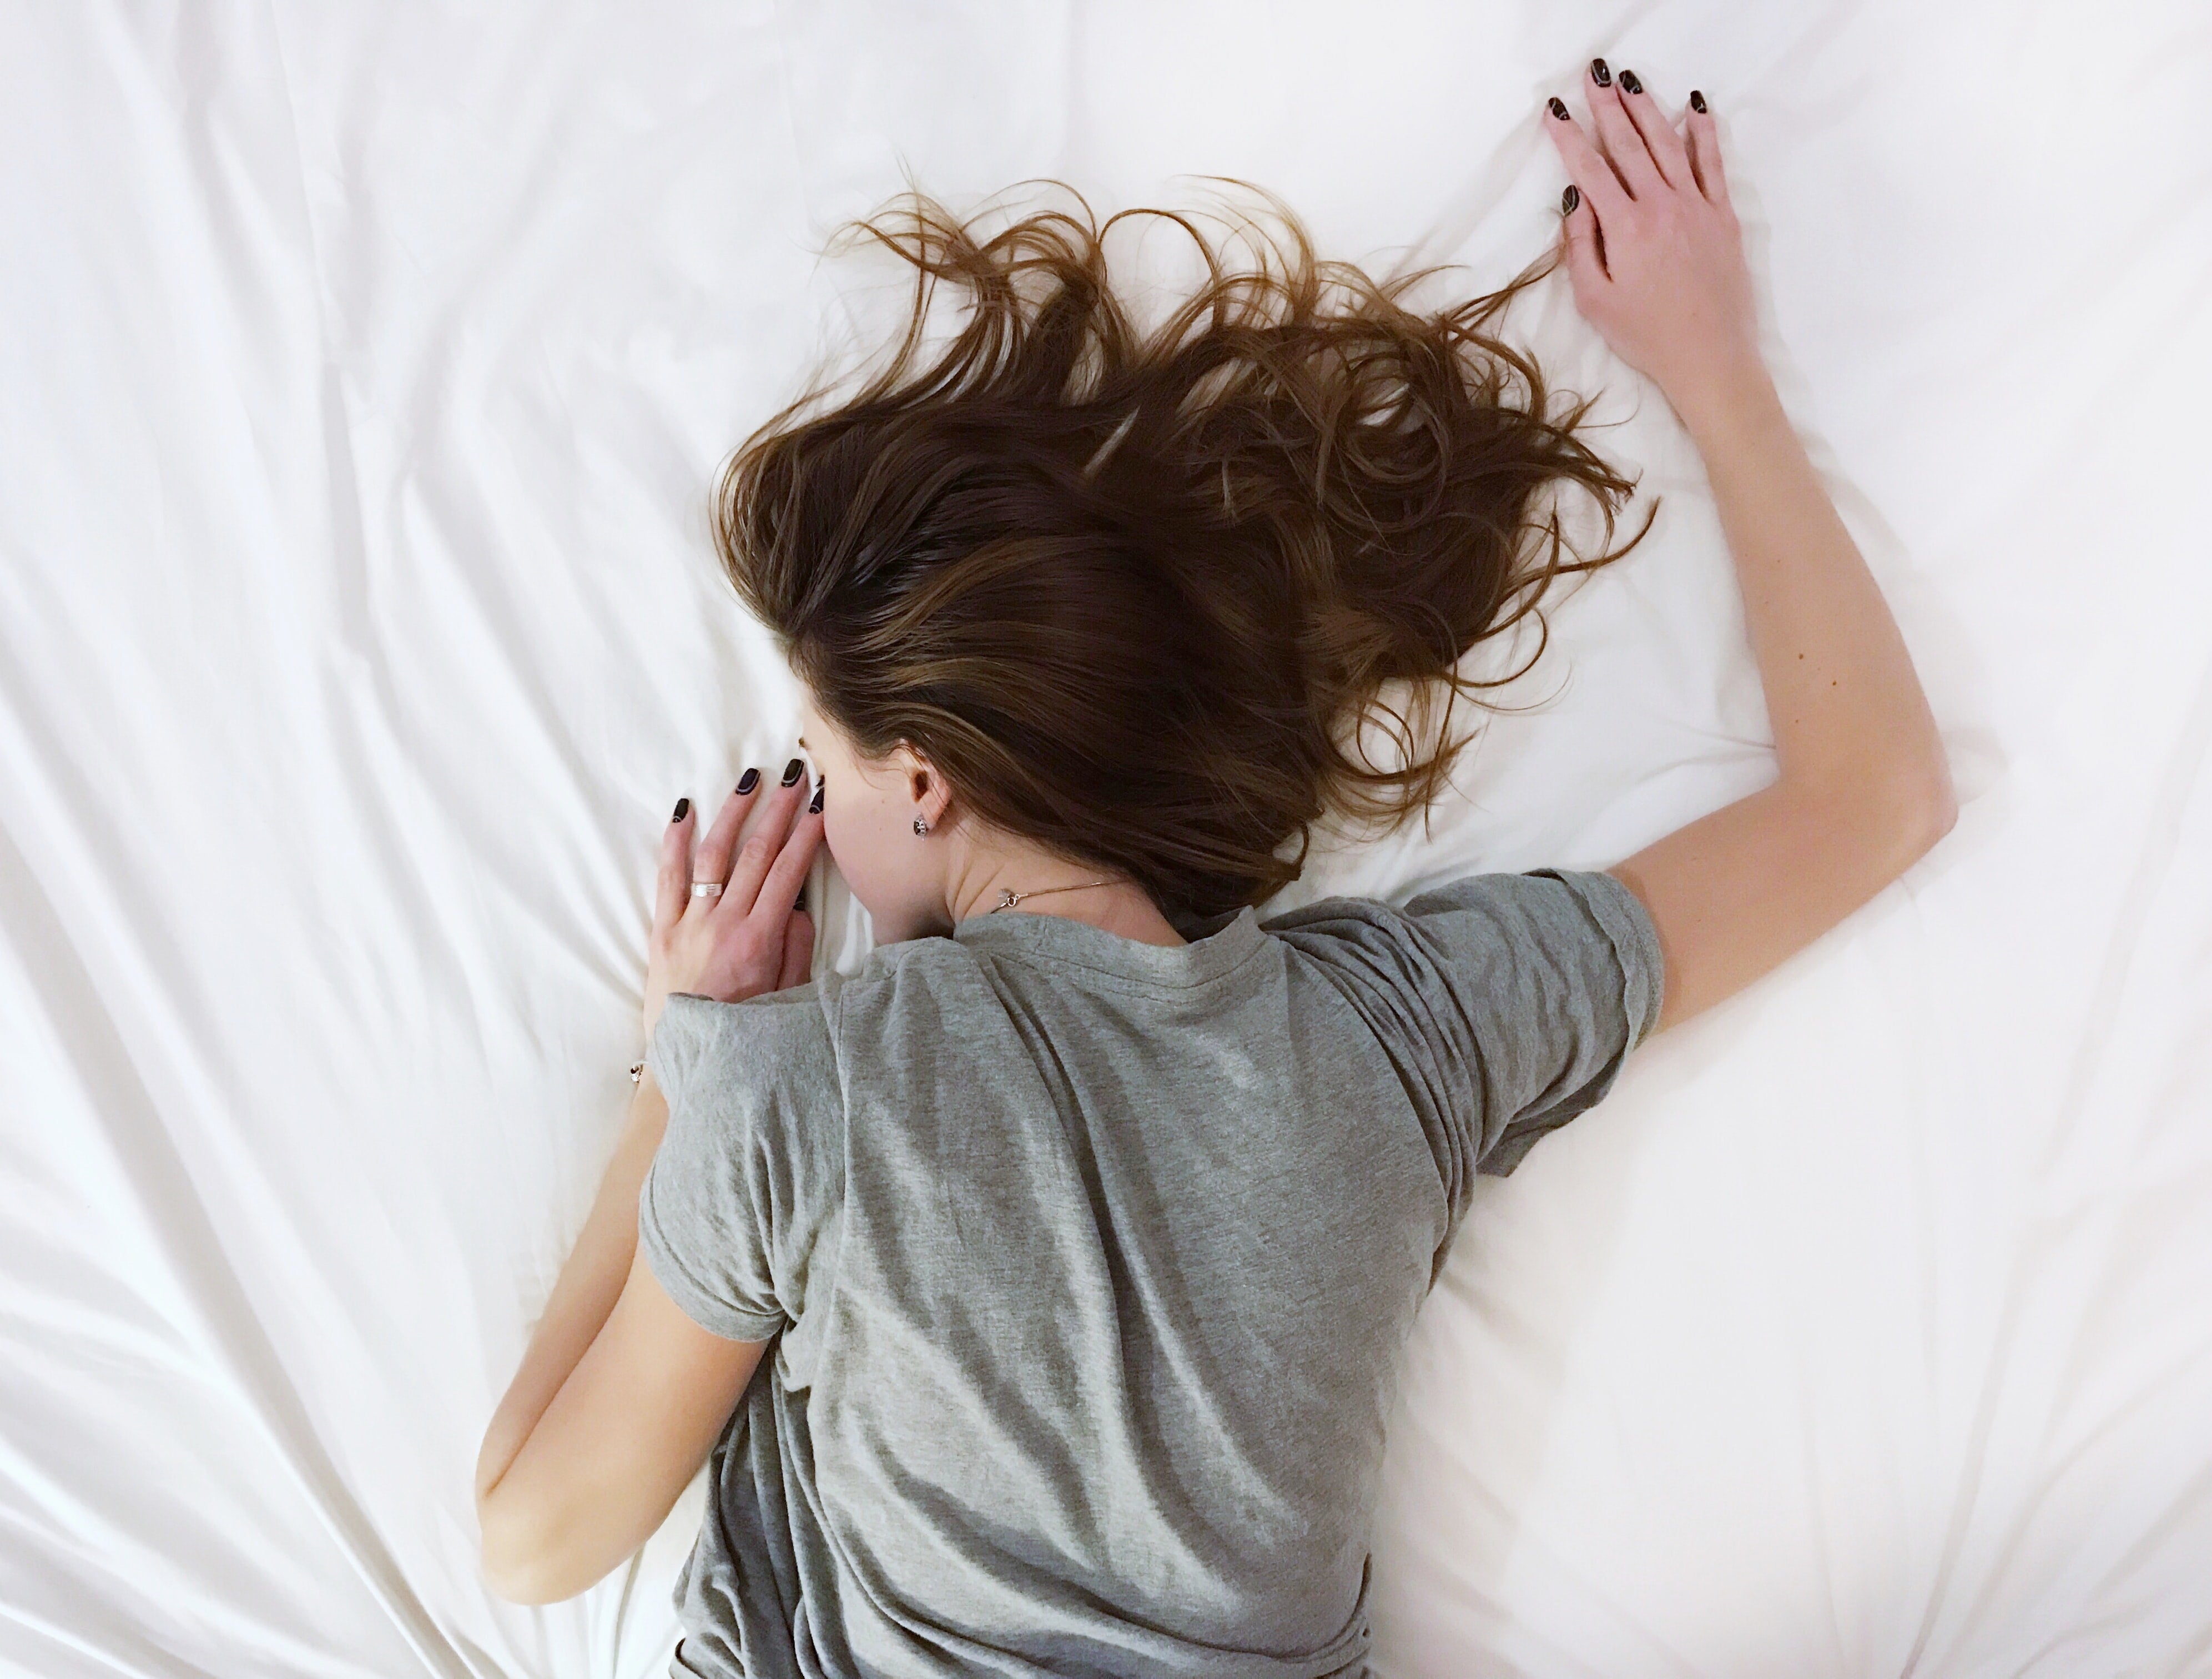 5 Steps To Good Sleep